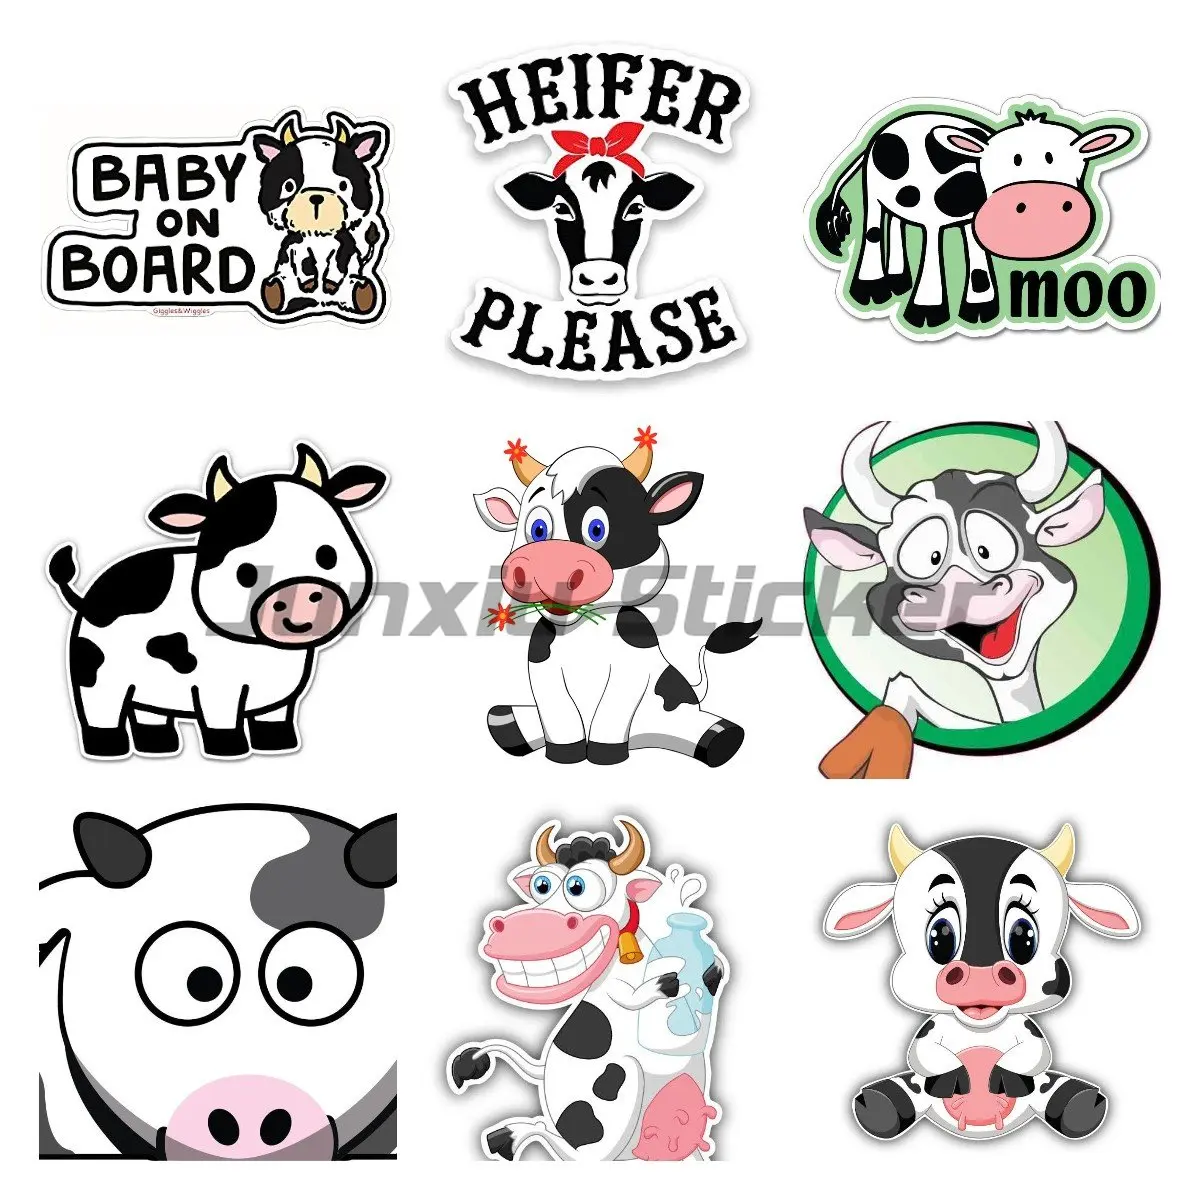 Виниловая наклейка Cute Cow - забавная наклейка Cow на бампер - для ноутбуков, тумблеров, окон, автомобилей, грузовиков, стен